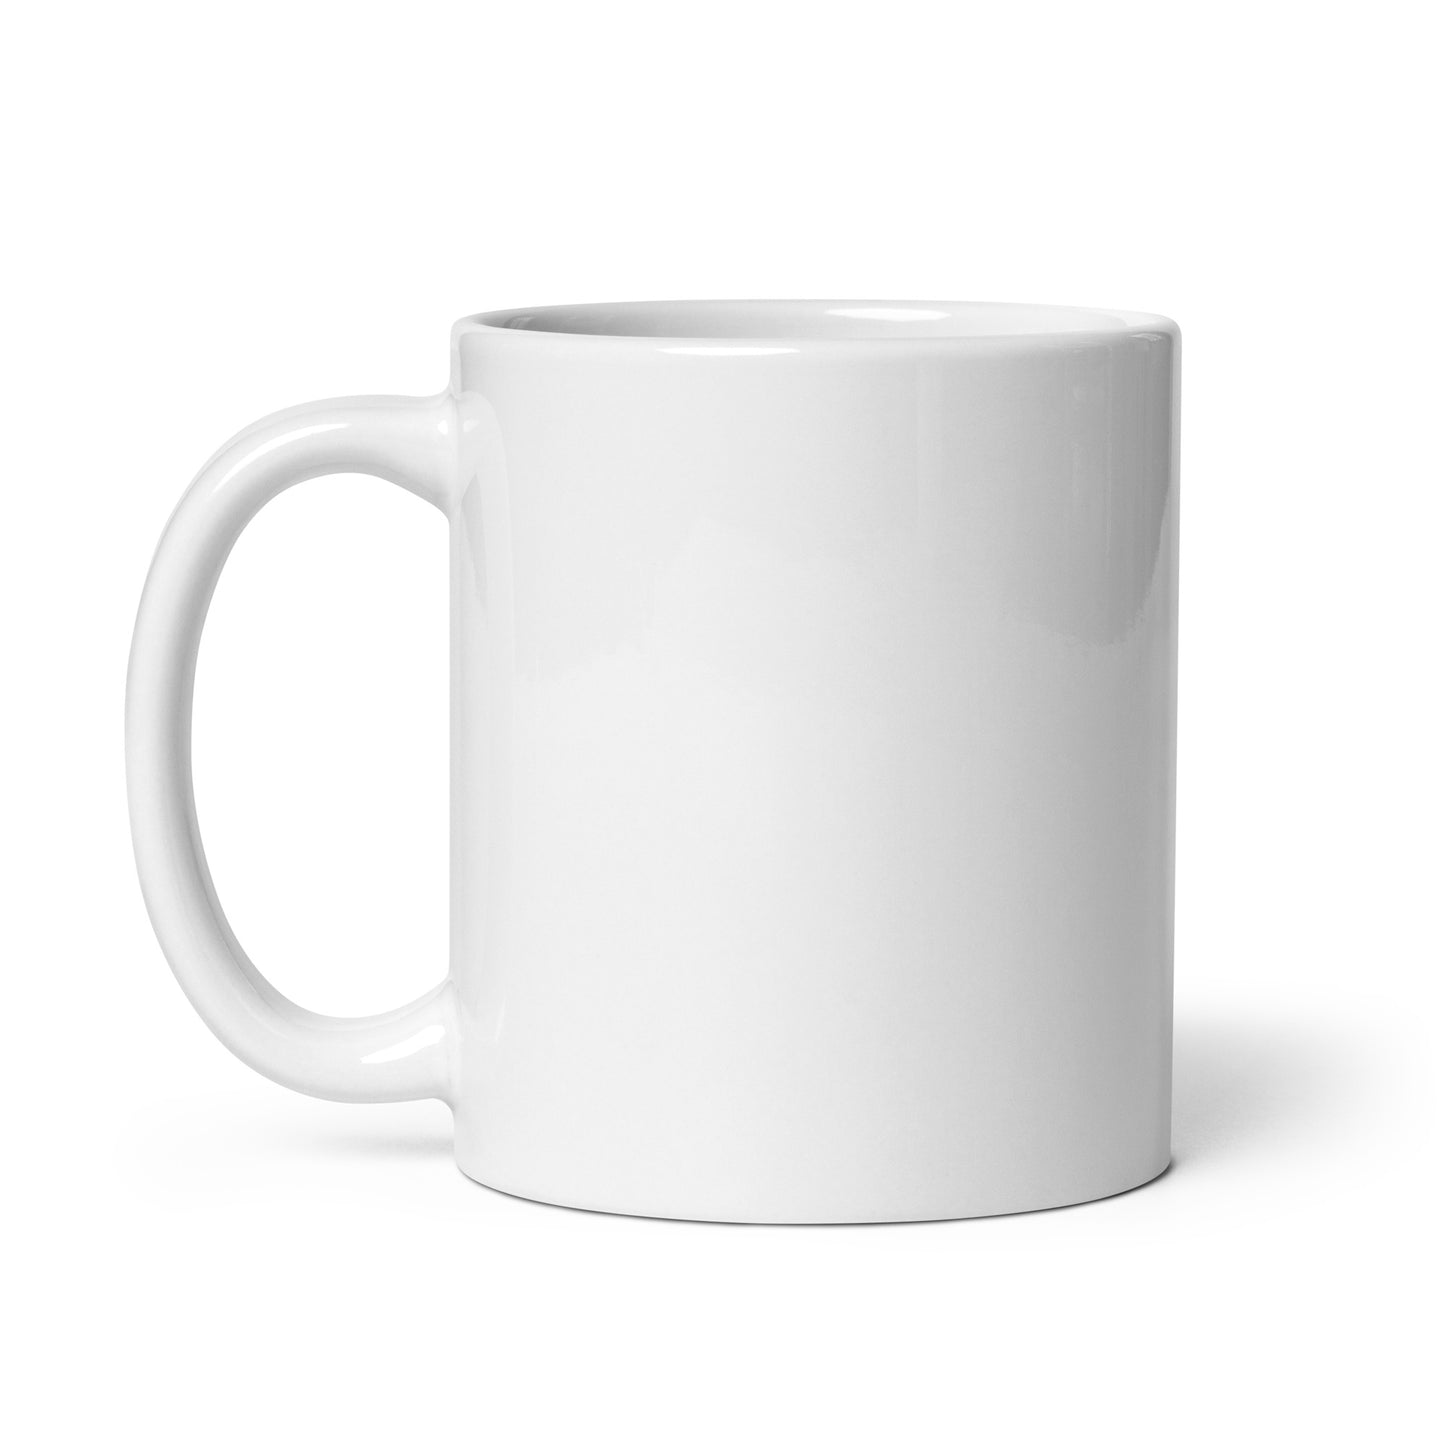 White glossy mug - Rugiet Health